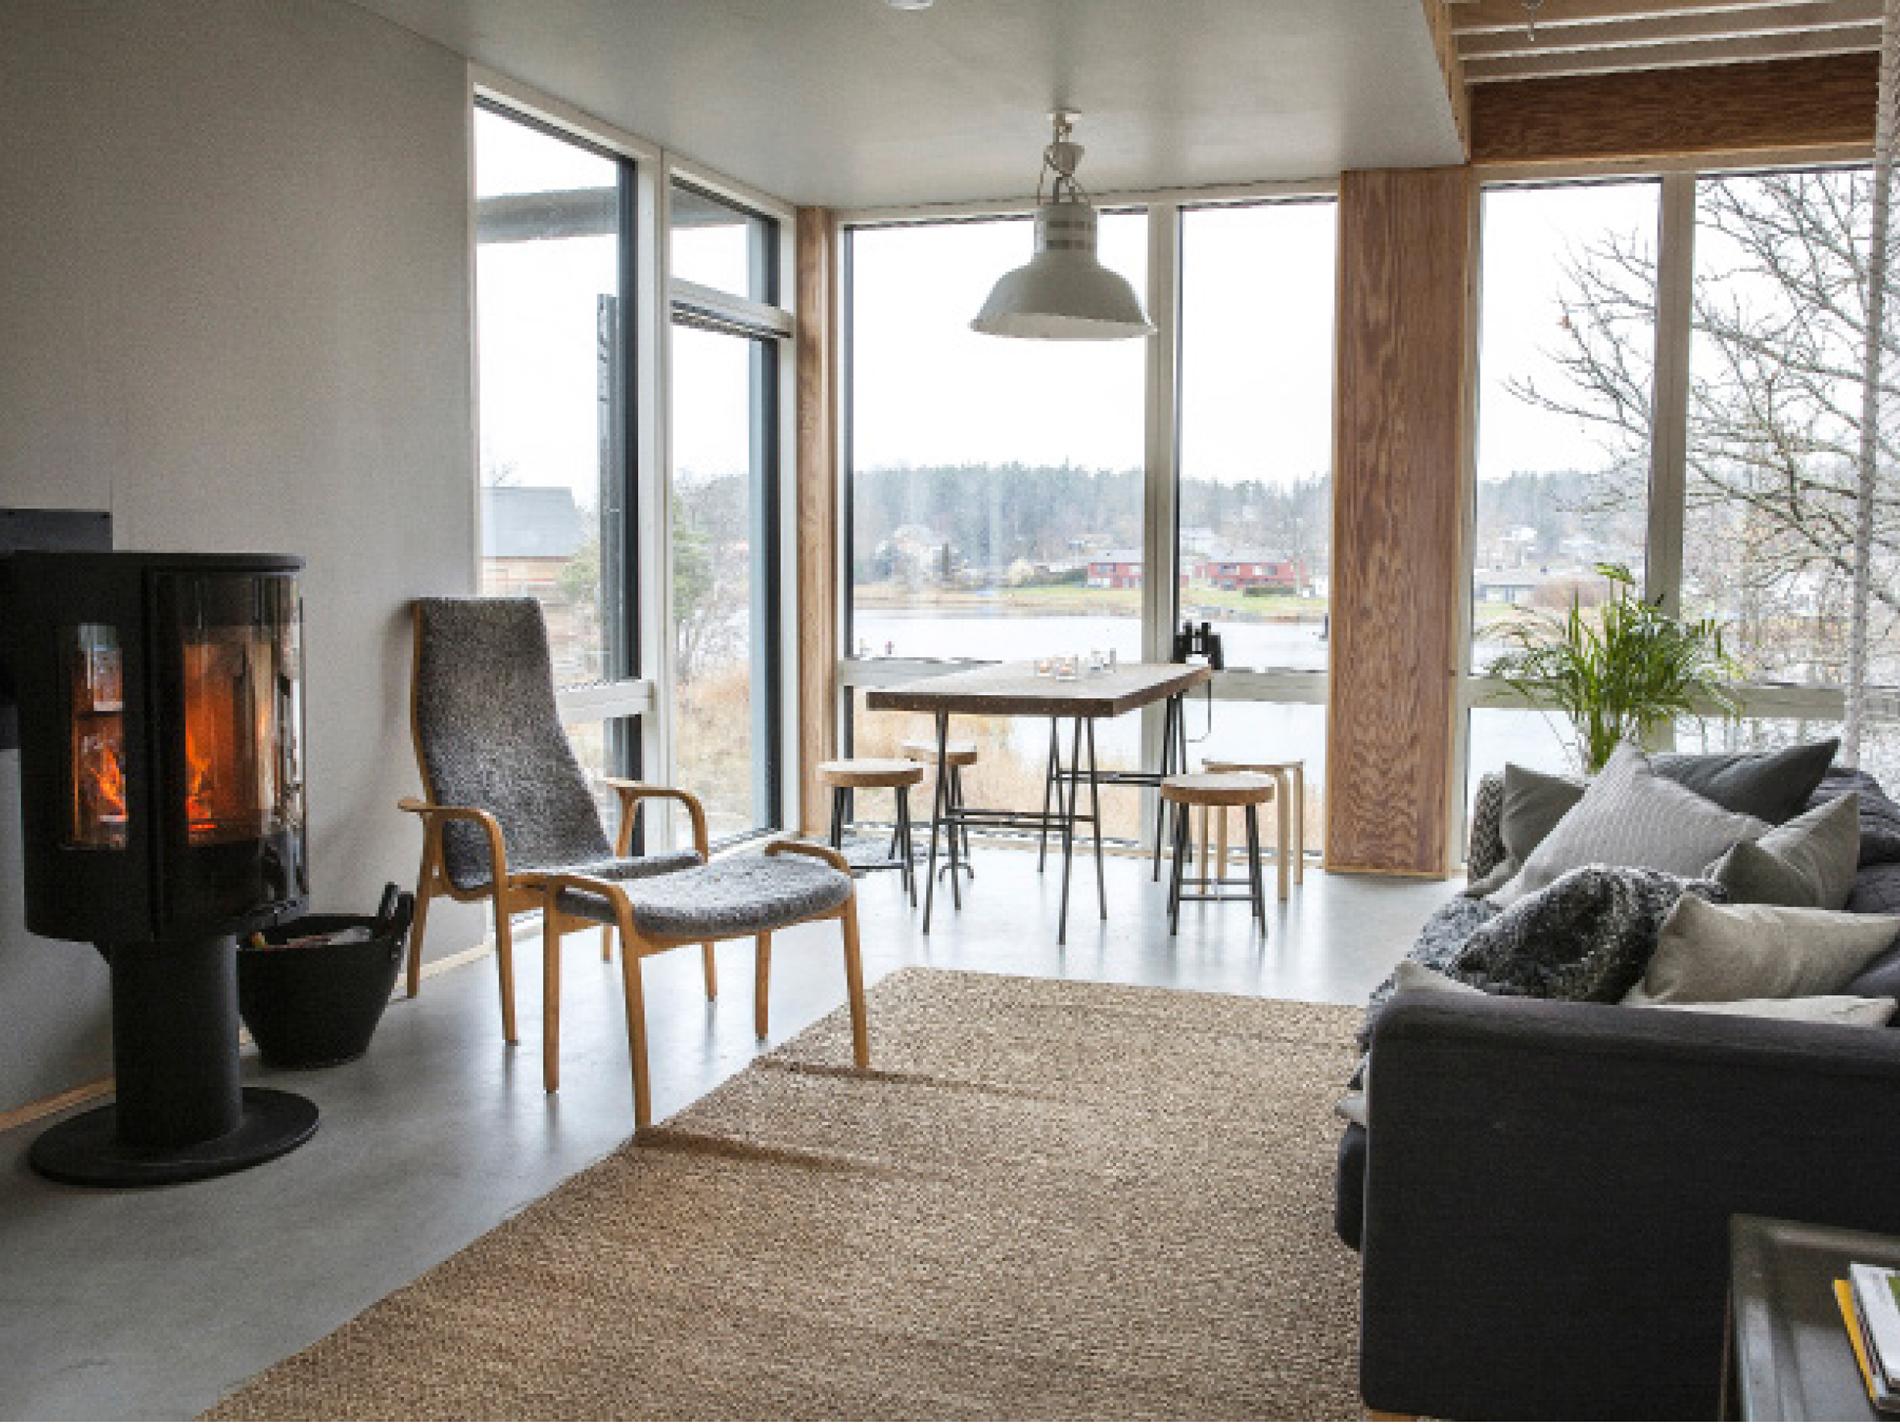 Vardagsrummet med fönster från golv till tak och utgång till terrass i västerläge. Kaminen  från Contura är husets hjärta, bredvid den en laminofåtölj. Matbord och pallar i kork från Ikea.